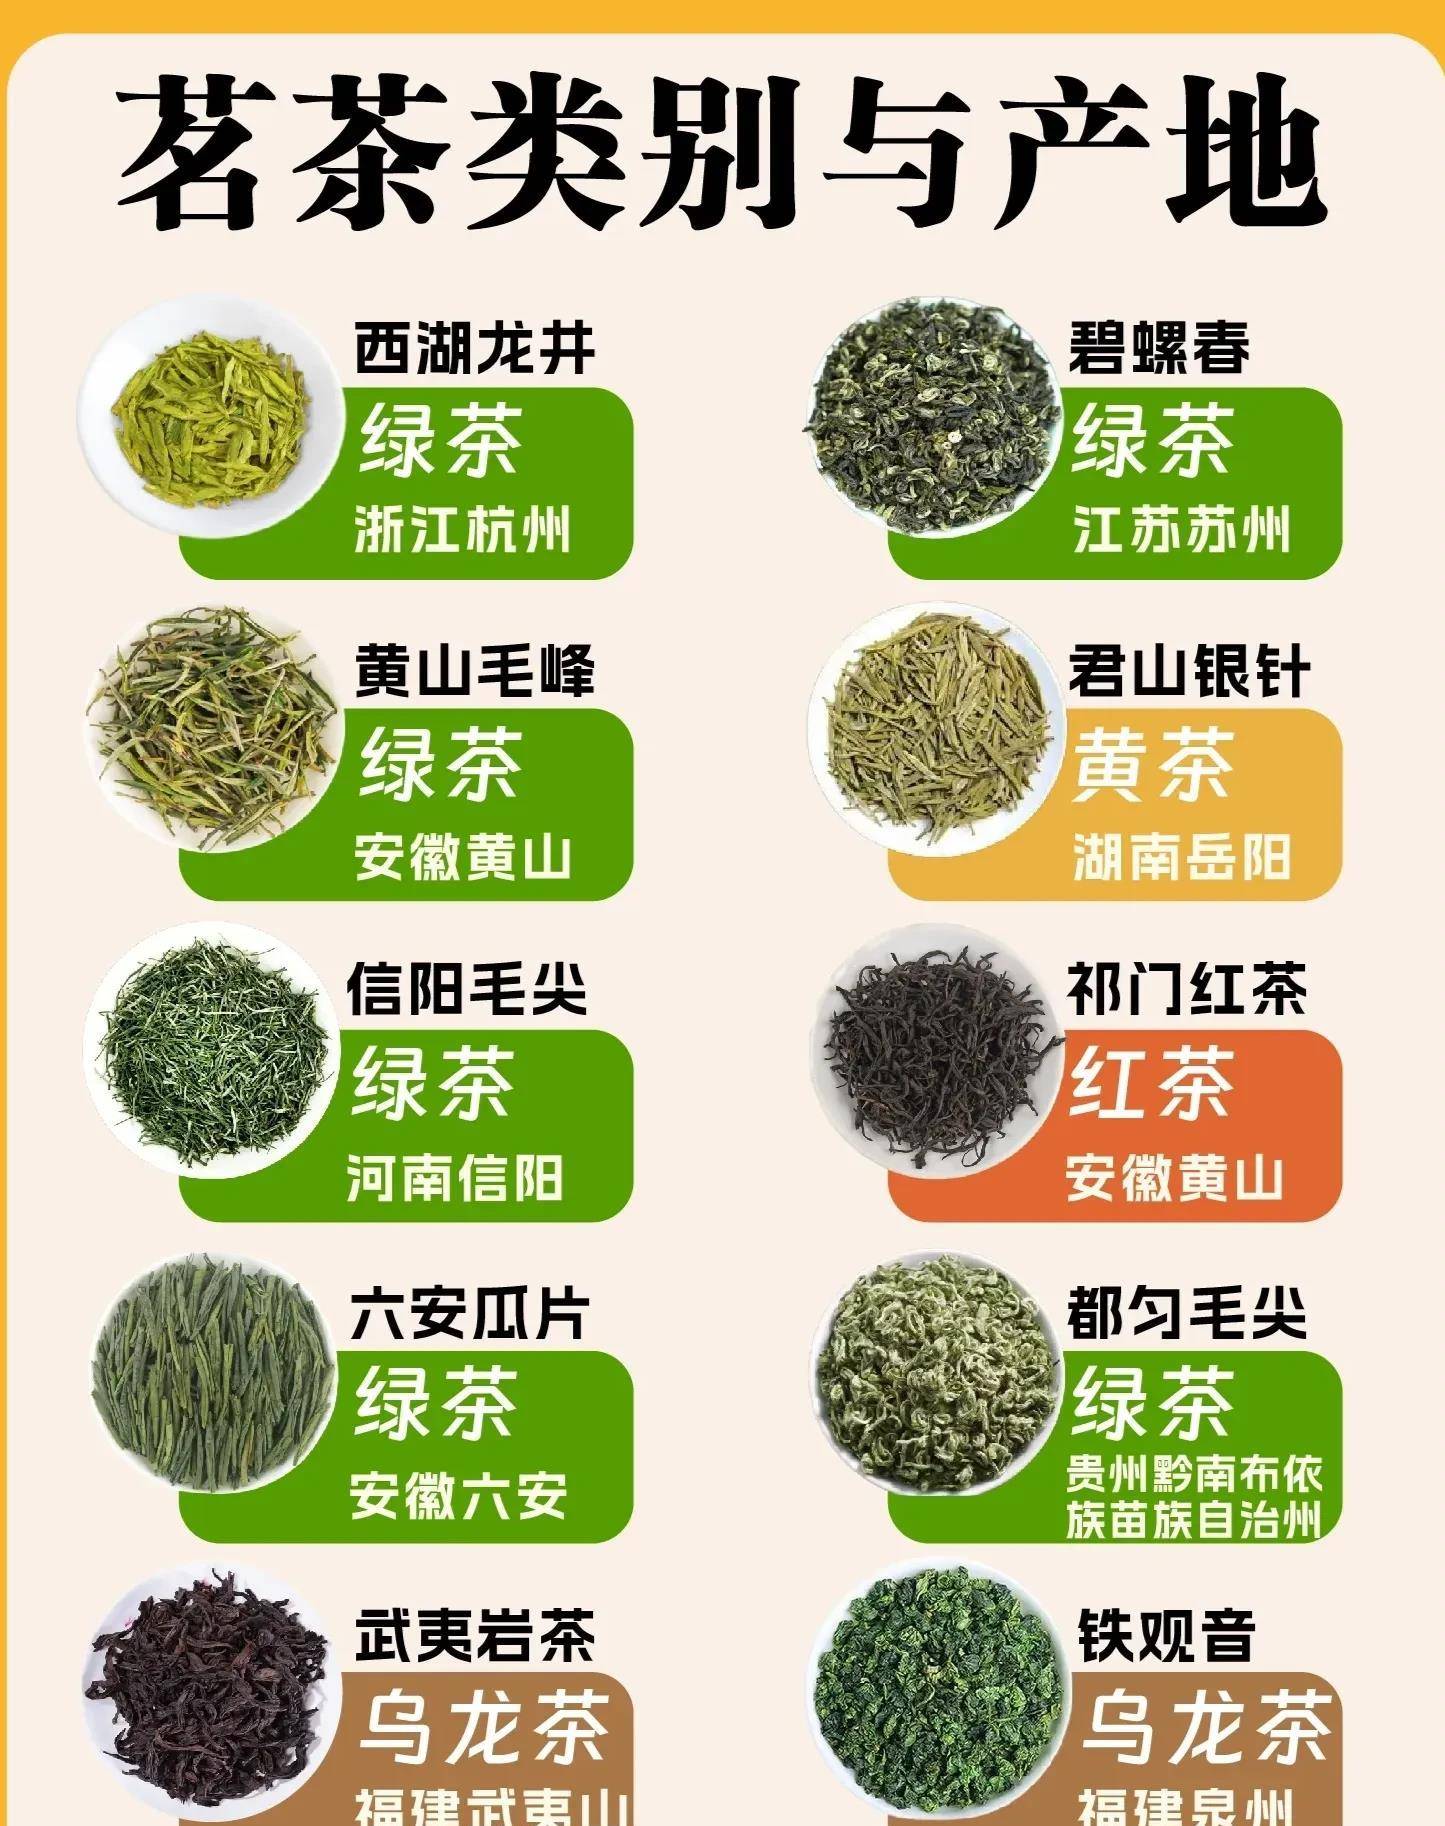 中国十大名茶,哪个是你心目中的第一名?